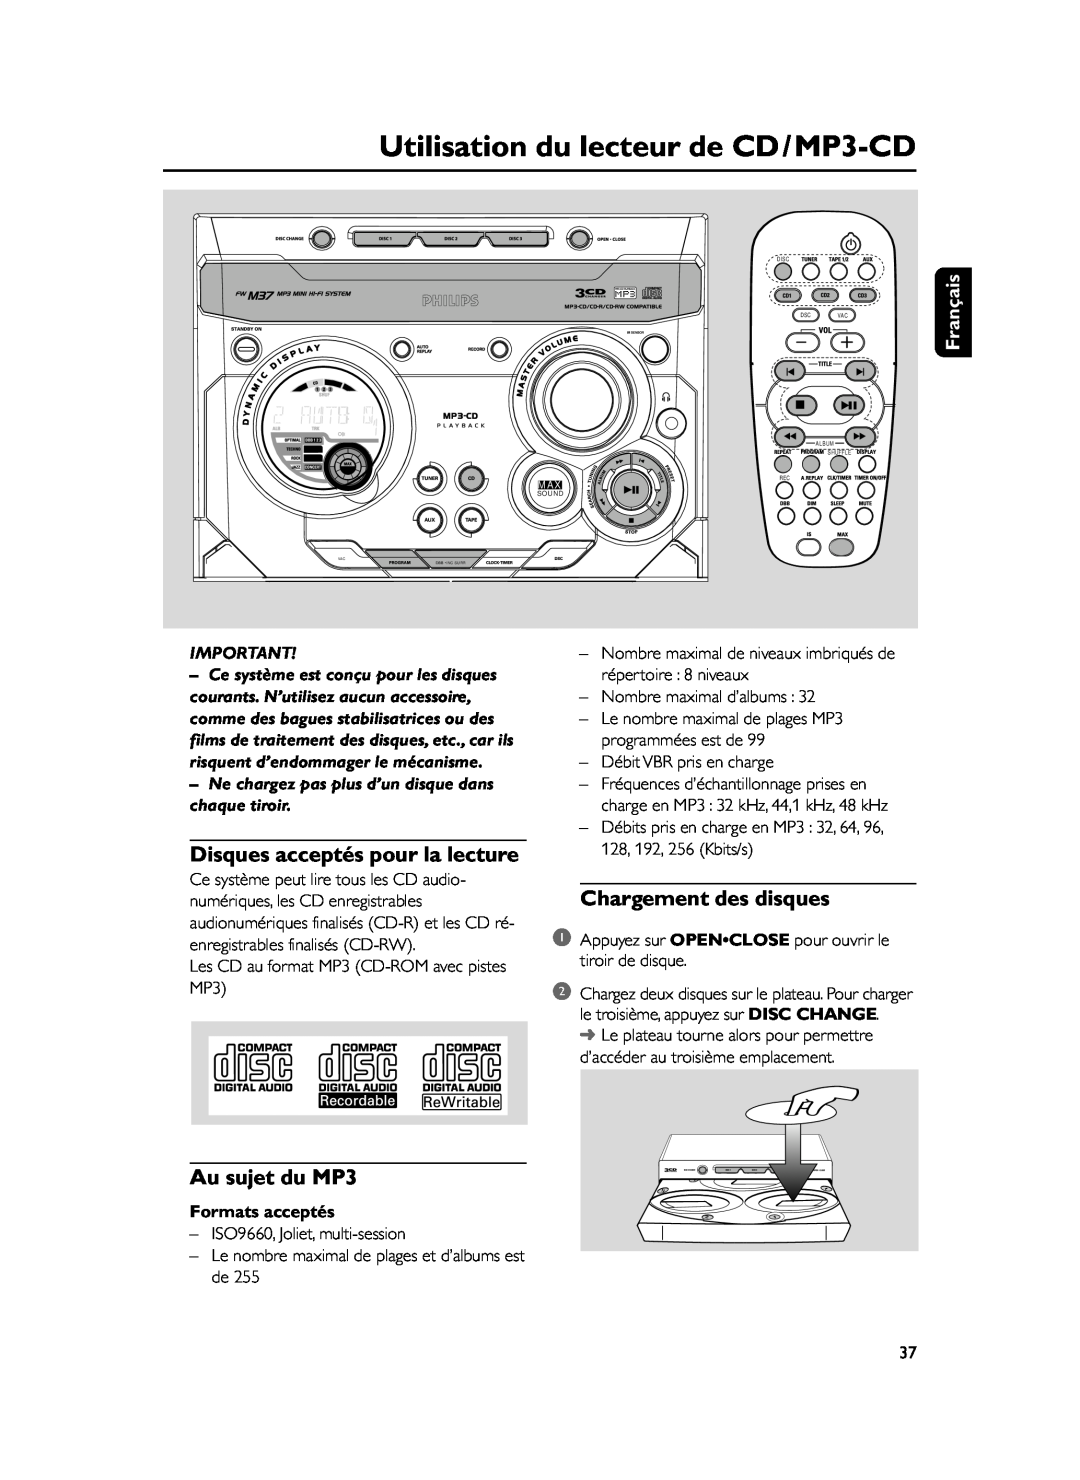 Philips FWM37 Utilisation du lecteur de CD/MP3-CD, Disques acceptés pour la lecture, Chargement des disques, Français 